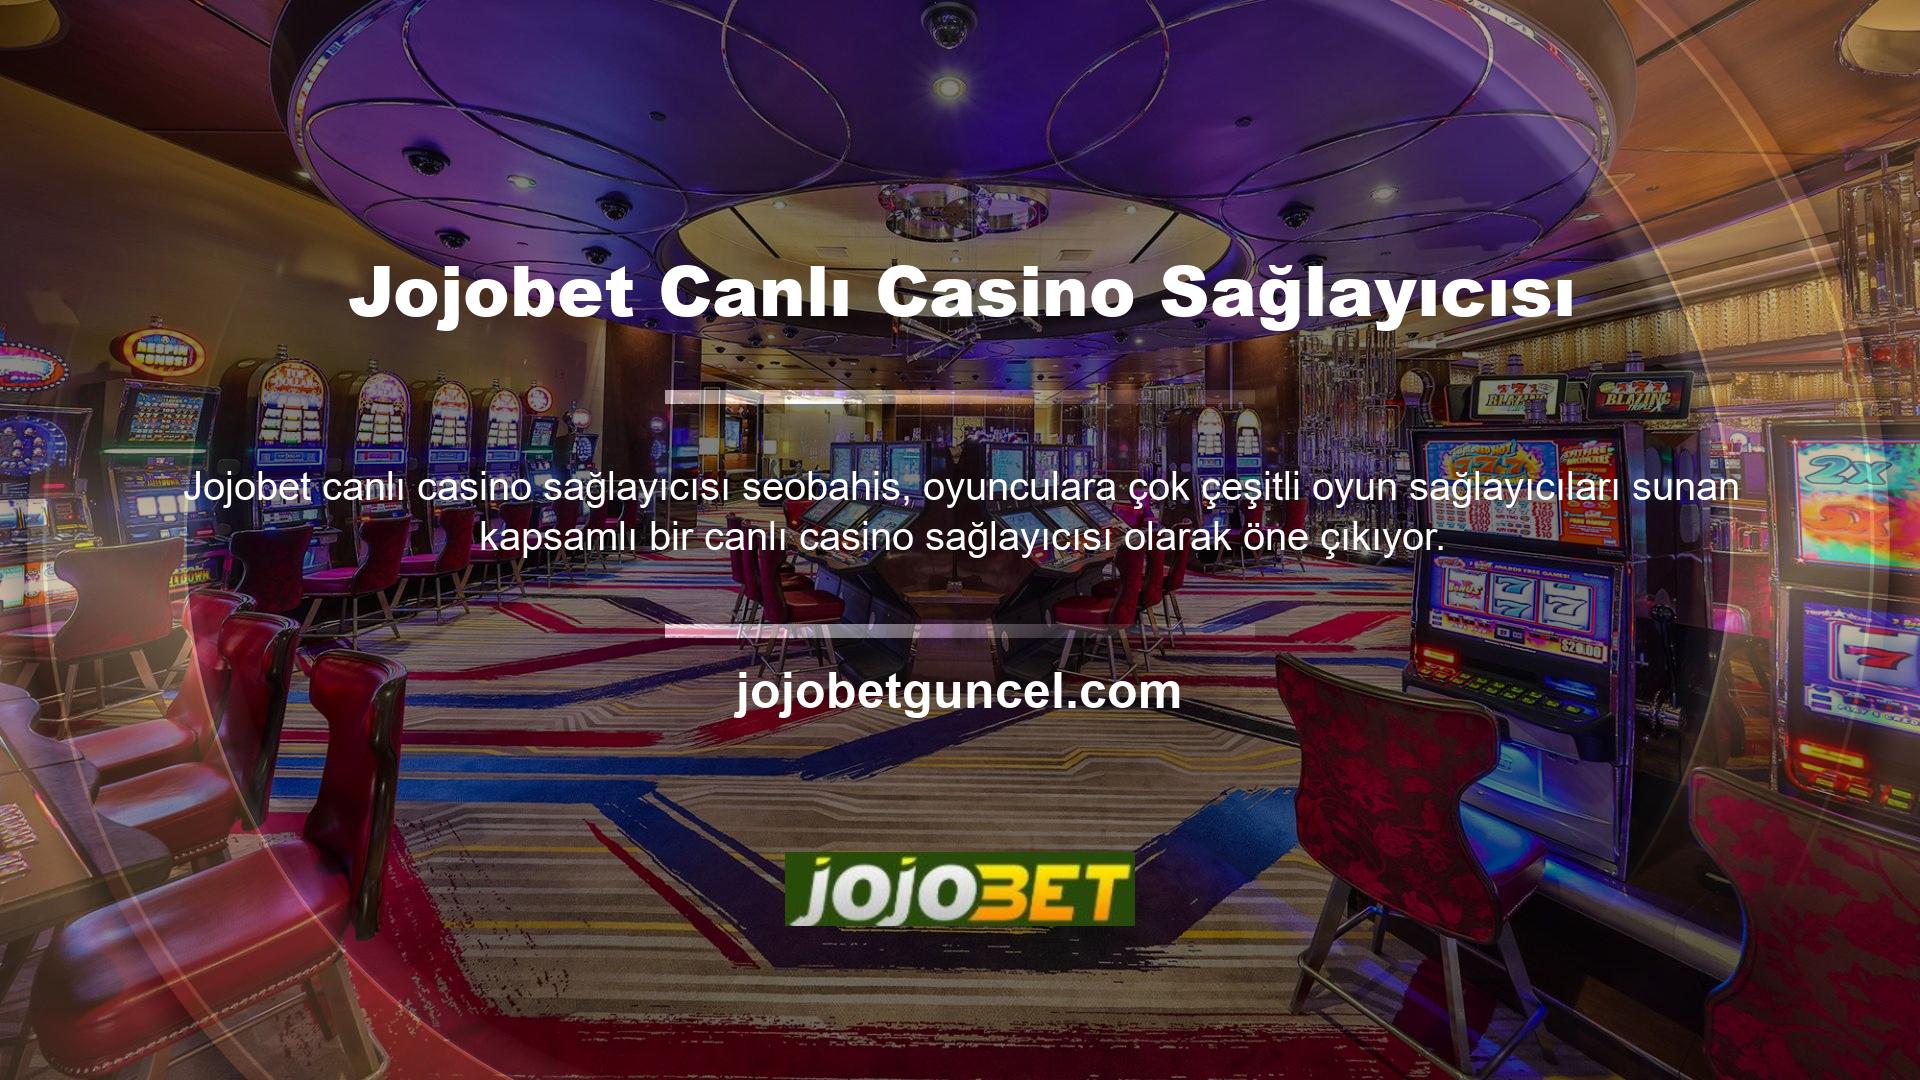 Jojobet sekiz oyun sağlayıcının hizmetleri aracılığıyla düzinelerce canlı casino oyununa erişmenizi sağlar